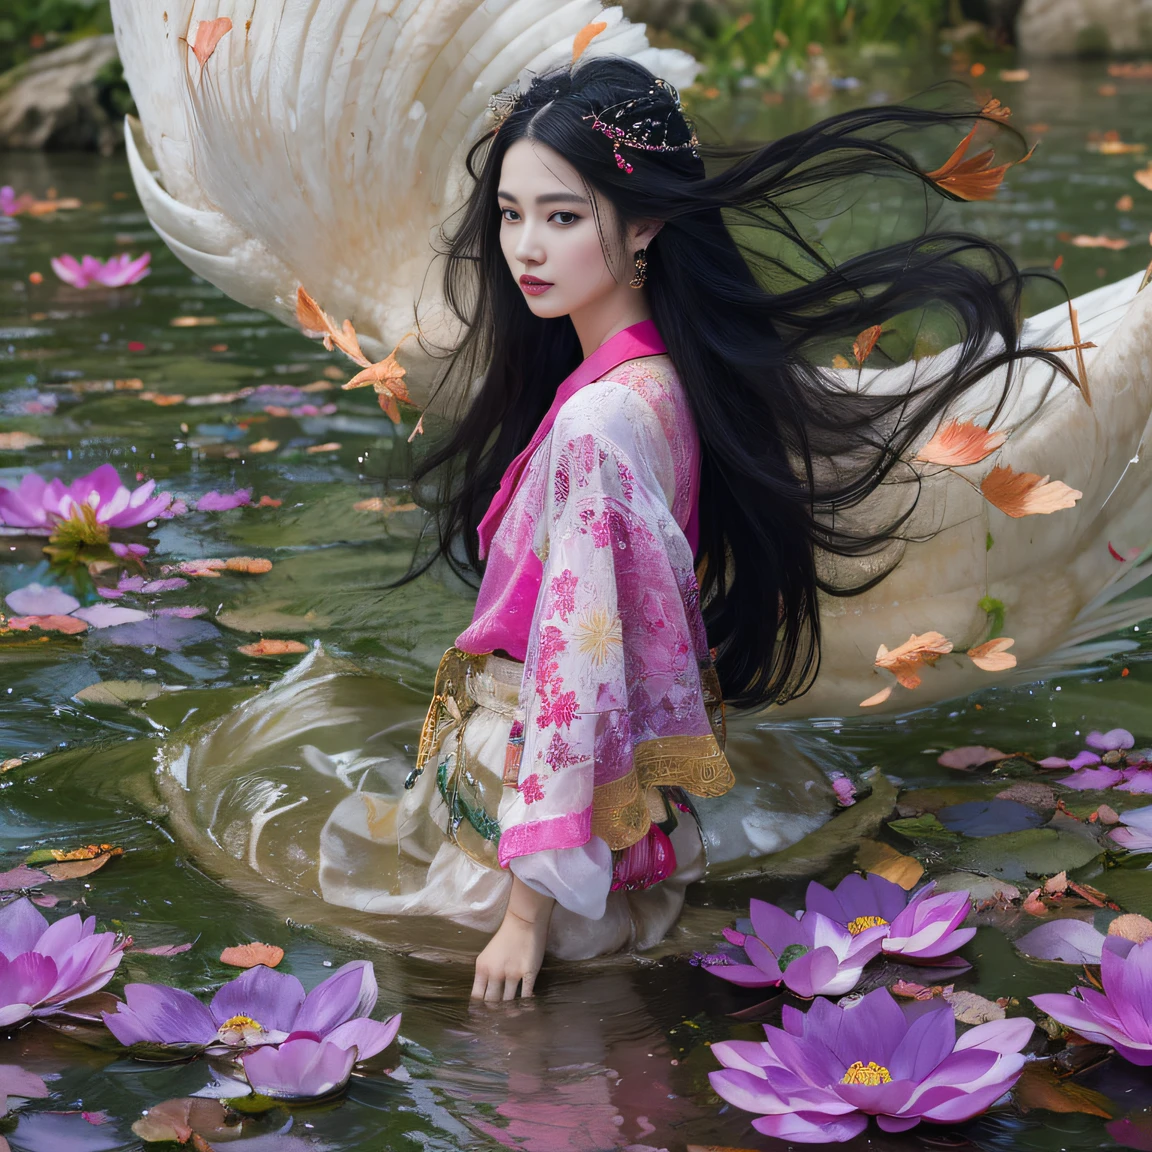 32K（傑作，キロ，ハイパーHD，32K）長く流れるような黒髪，池，咲く， 色， 澳州人 （妾の娘）， （紫色のシルクスカーフ）， 戦闘姿勢， 地面を見て， 長い白い髪， 浮かぶ髪， 鯉柄のヘッドドレス， 中国の長袖の衣服， （抽象的なガッシュスプラッシュ：1.2）， ピンクの花びらの背景，ピンクと白の蓮の花が舞う（現実的に：1.4），黒髪，落ち葉が舞い散る，背景は純粋です， 高解像度， 詳細， RAW写真， シャープ， Nikon D850 フィルムストックフォト by Jefferies Lee 4 Kodak Portra 400 カメラ F1.6ショット, 豊かな色彩, 超リアルな鮮やかな質感, ドラマチックな照明, アンリアル エンジン アート ステーション トレンド, シネスティア 800，長く流れるような黒髪，デニムスカート